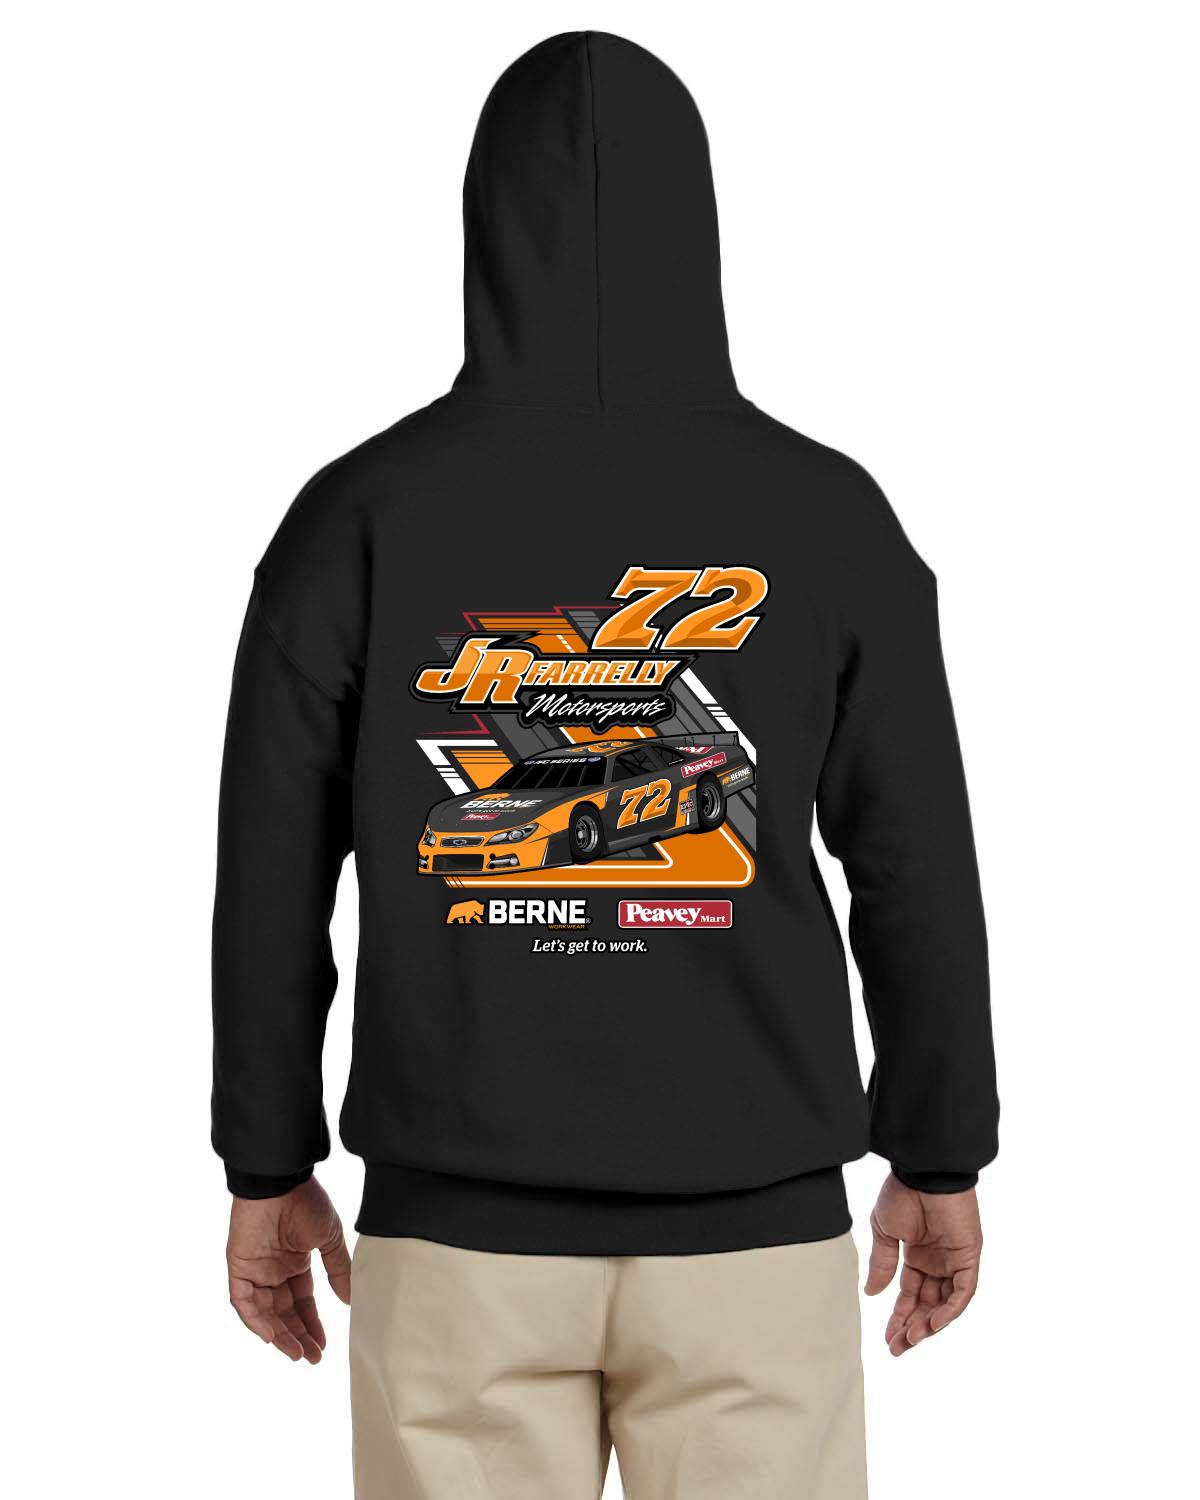 Jr. Farrelly Motorsports / BERNE-Peavey Racing Men's Hoodie